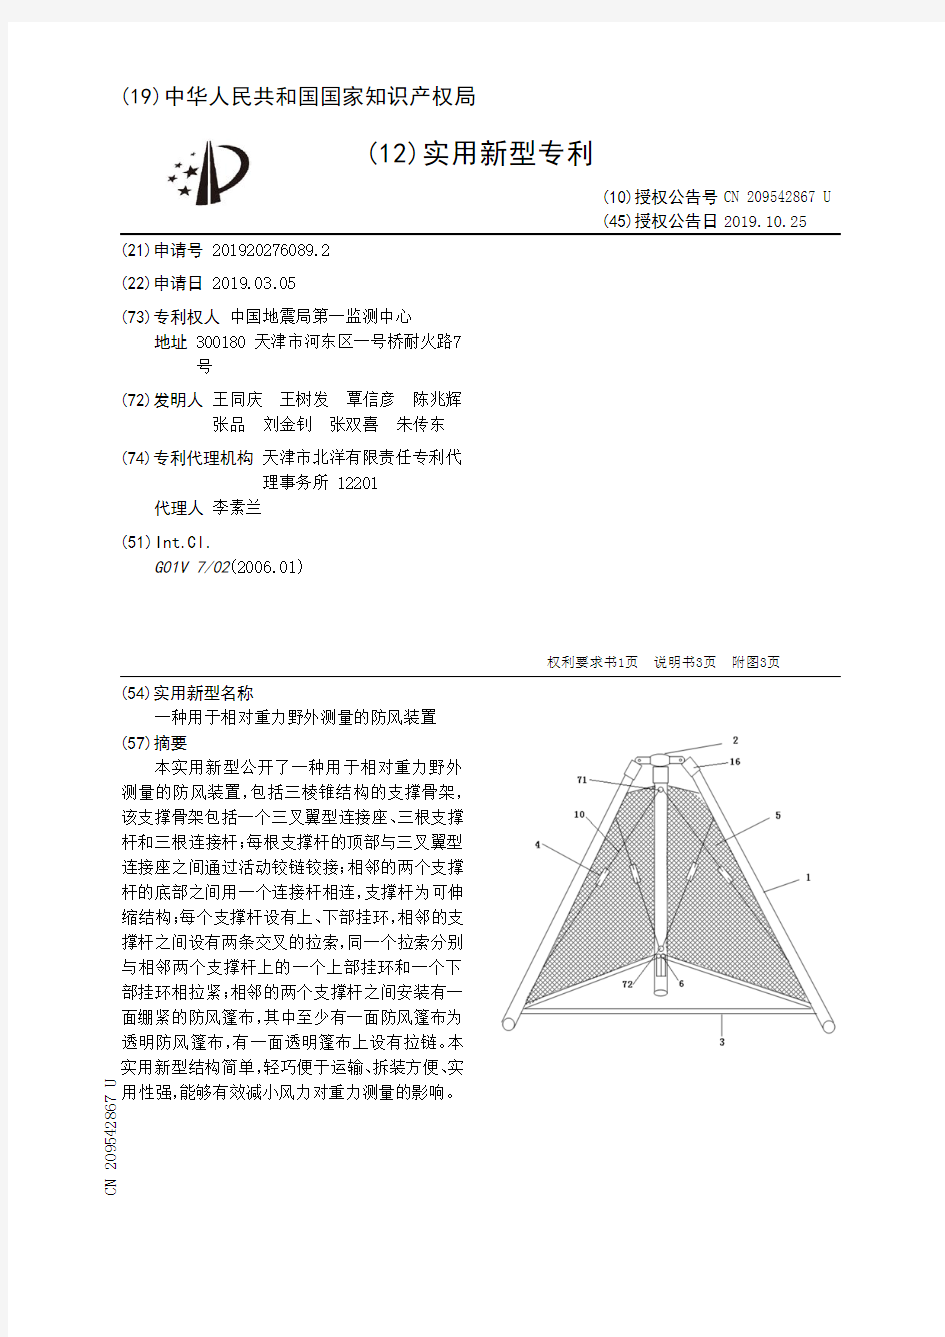 【CN209542867U】一种用于相对重力野外测量的防风装置【专利】